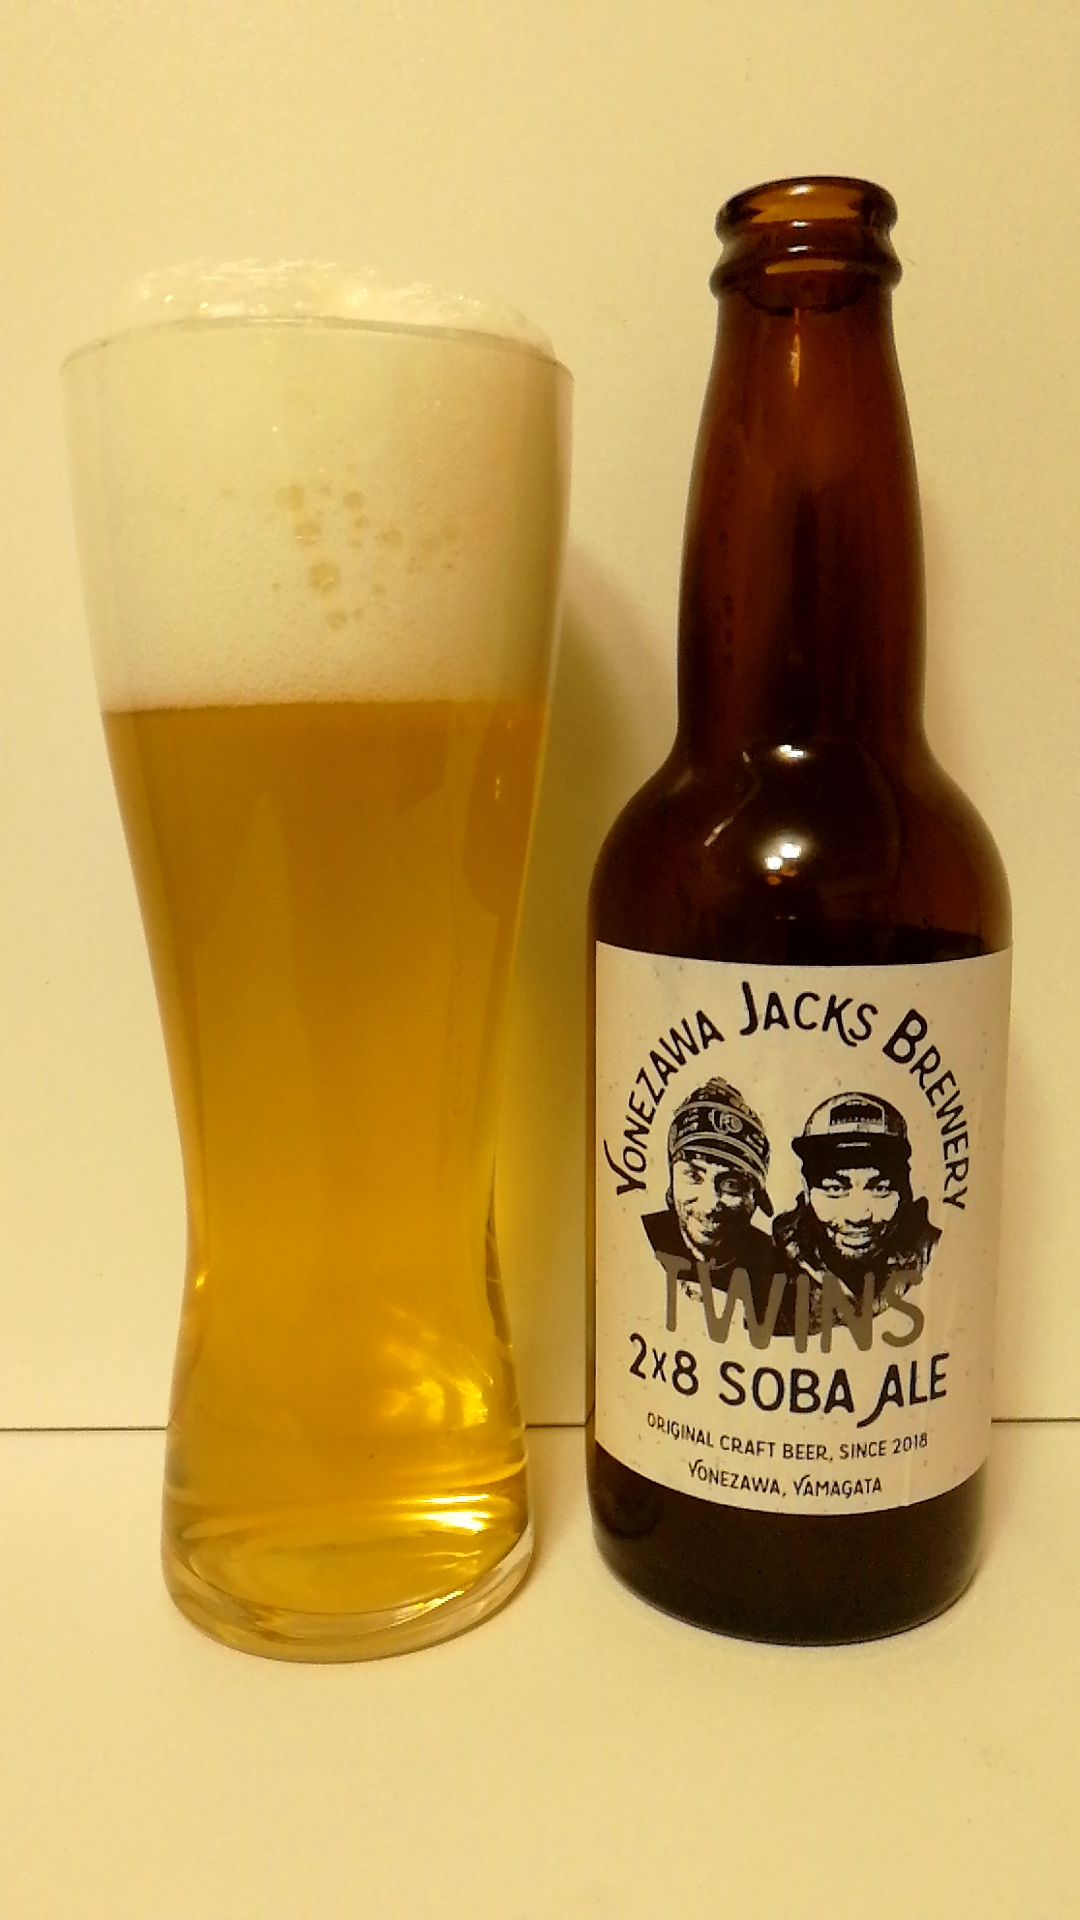 山形 Yonezawa Jacks Brewery 2×8 SOBA ALE「ツインズ